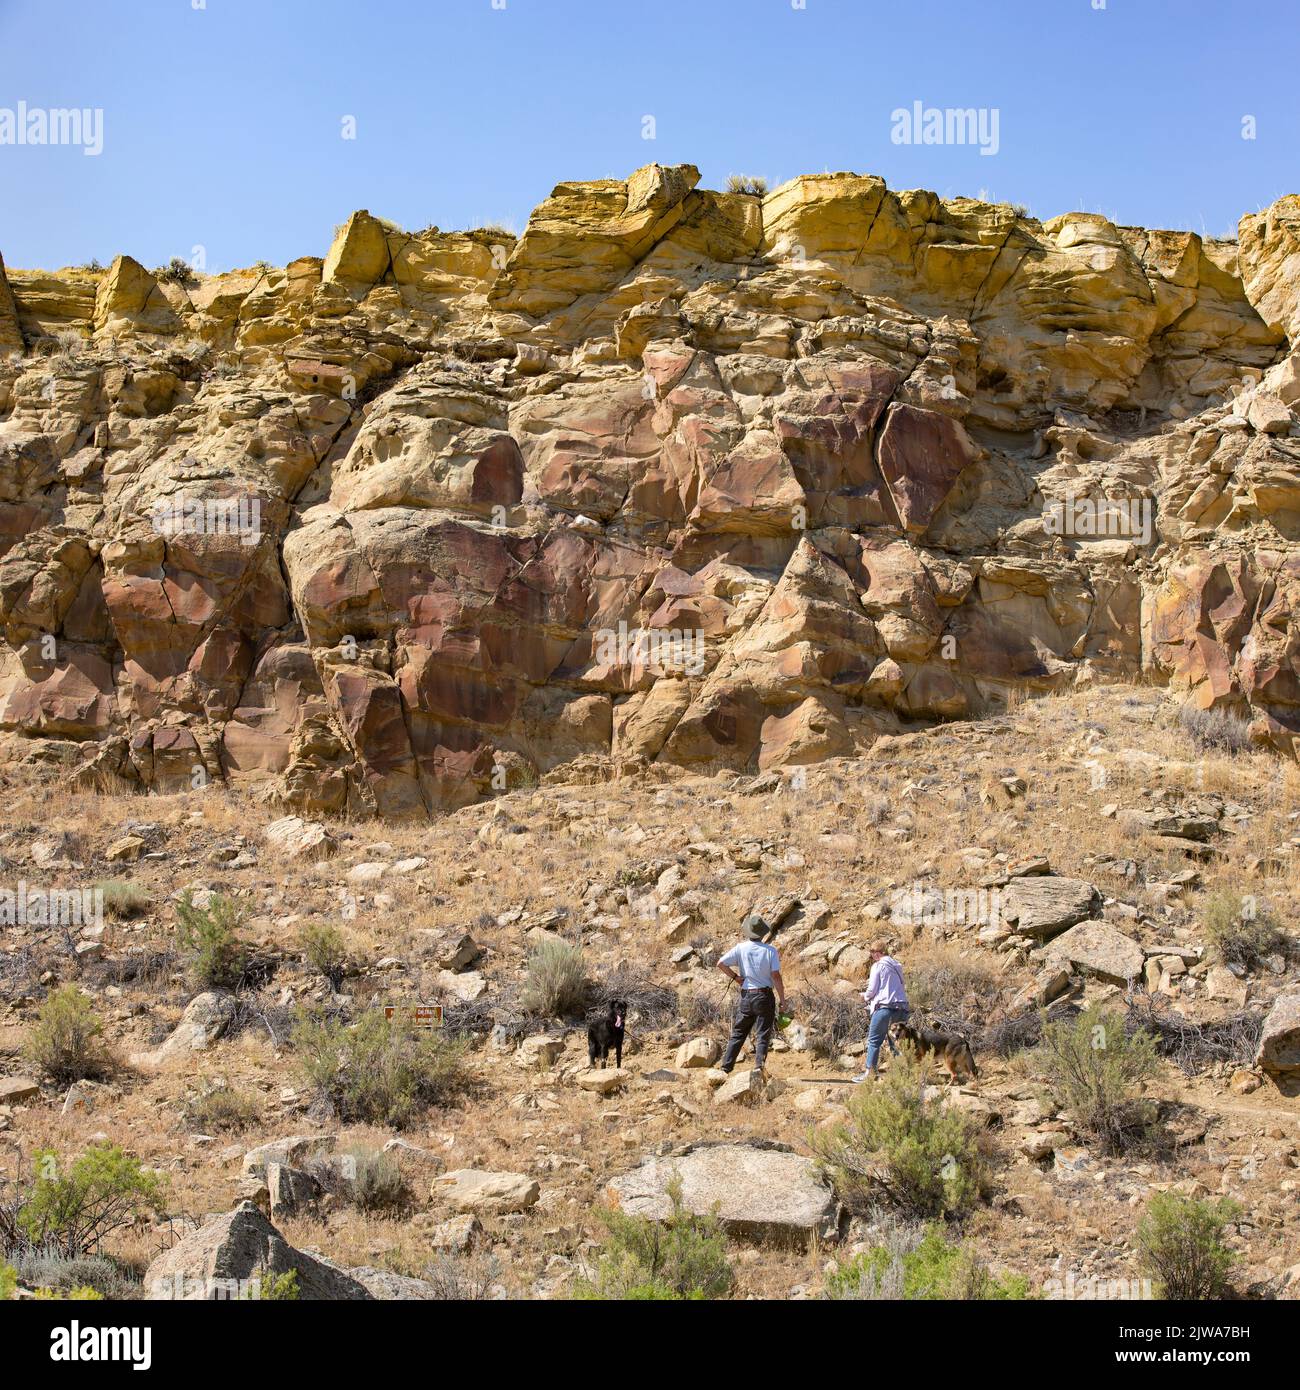 Touristes regardant l'art rupestre historique des pétroglyphes amérindiens sur des panneaux de grès dans le site archéologique de l'État de Legend Rock, Wyoming Banque D'Images